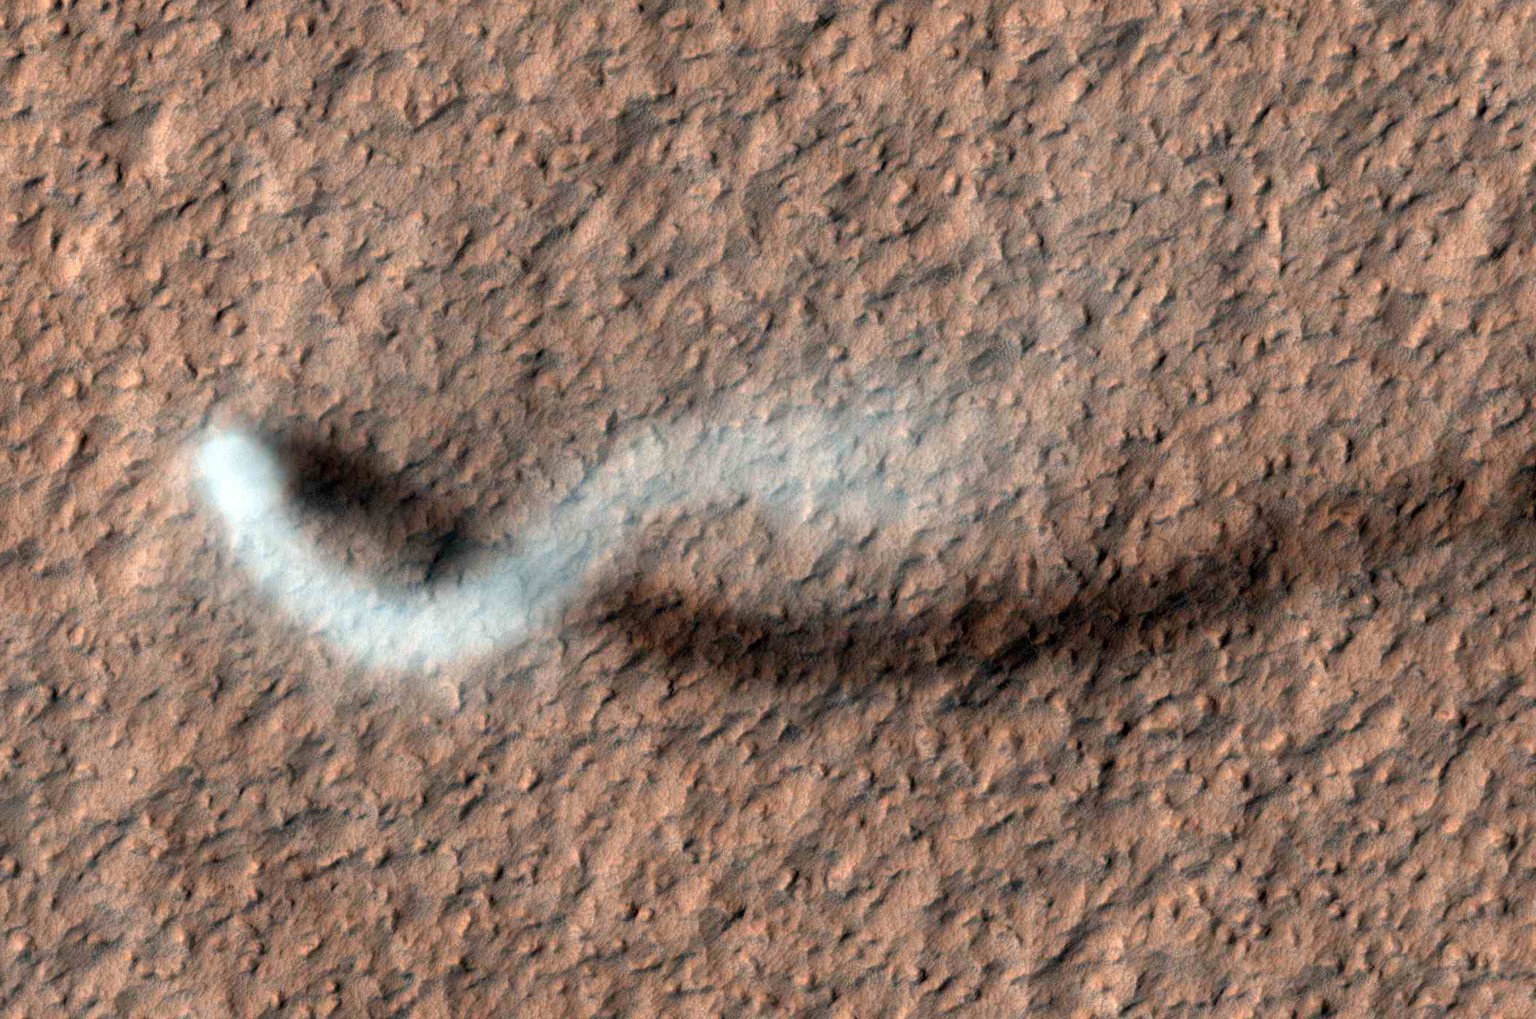 Es geht auch kleiner: Dieser Staubteufel (Staubtrombe, Dust Devil), aufgenommen im Februar 2012 vom&nbsp;Mars Reconnaissance Orbiter, hat einen Durchmesser von rund 30 Metern. Der abgebildete Ausschnitt ist insgesamt 644 Meter breit. Die Staubfahne dürfte – wie sich aus ihrem Schatten berechnen lässt – etwa 800 Meter hoch sein.&nbsp; &nbsp; &nbsp;